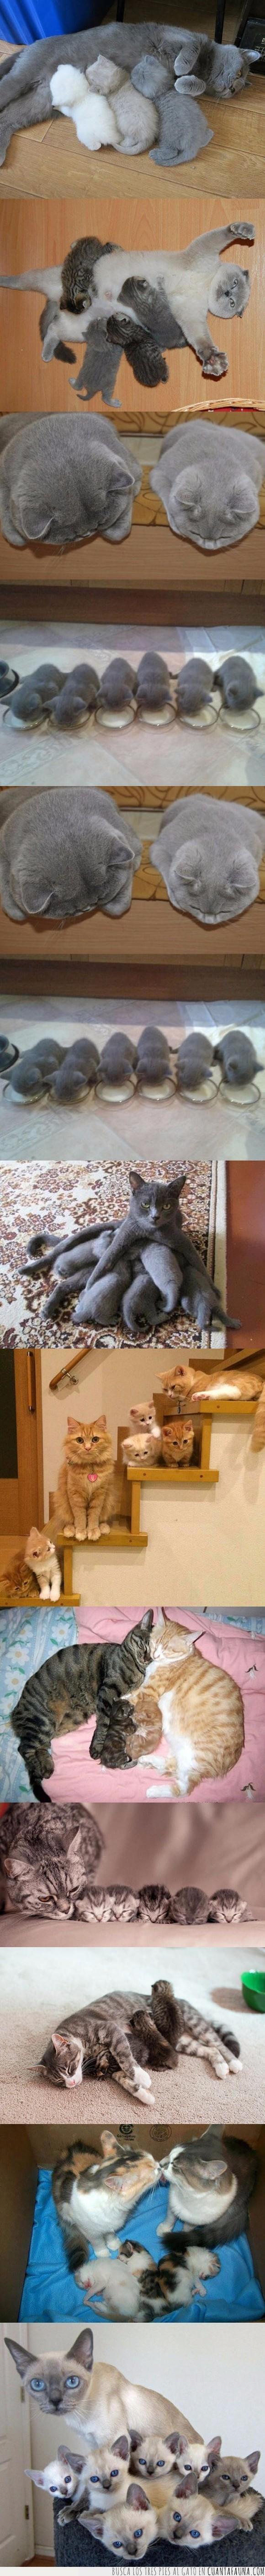 familias,gatitos,gatos